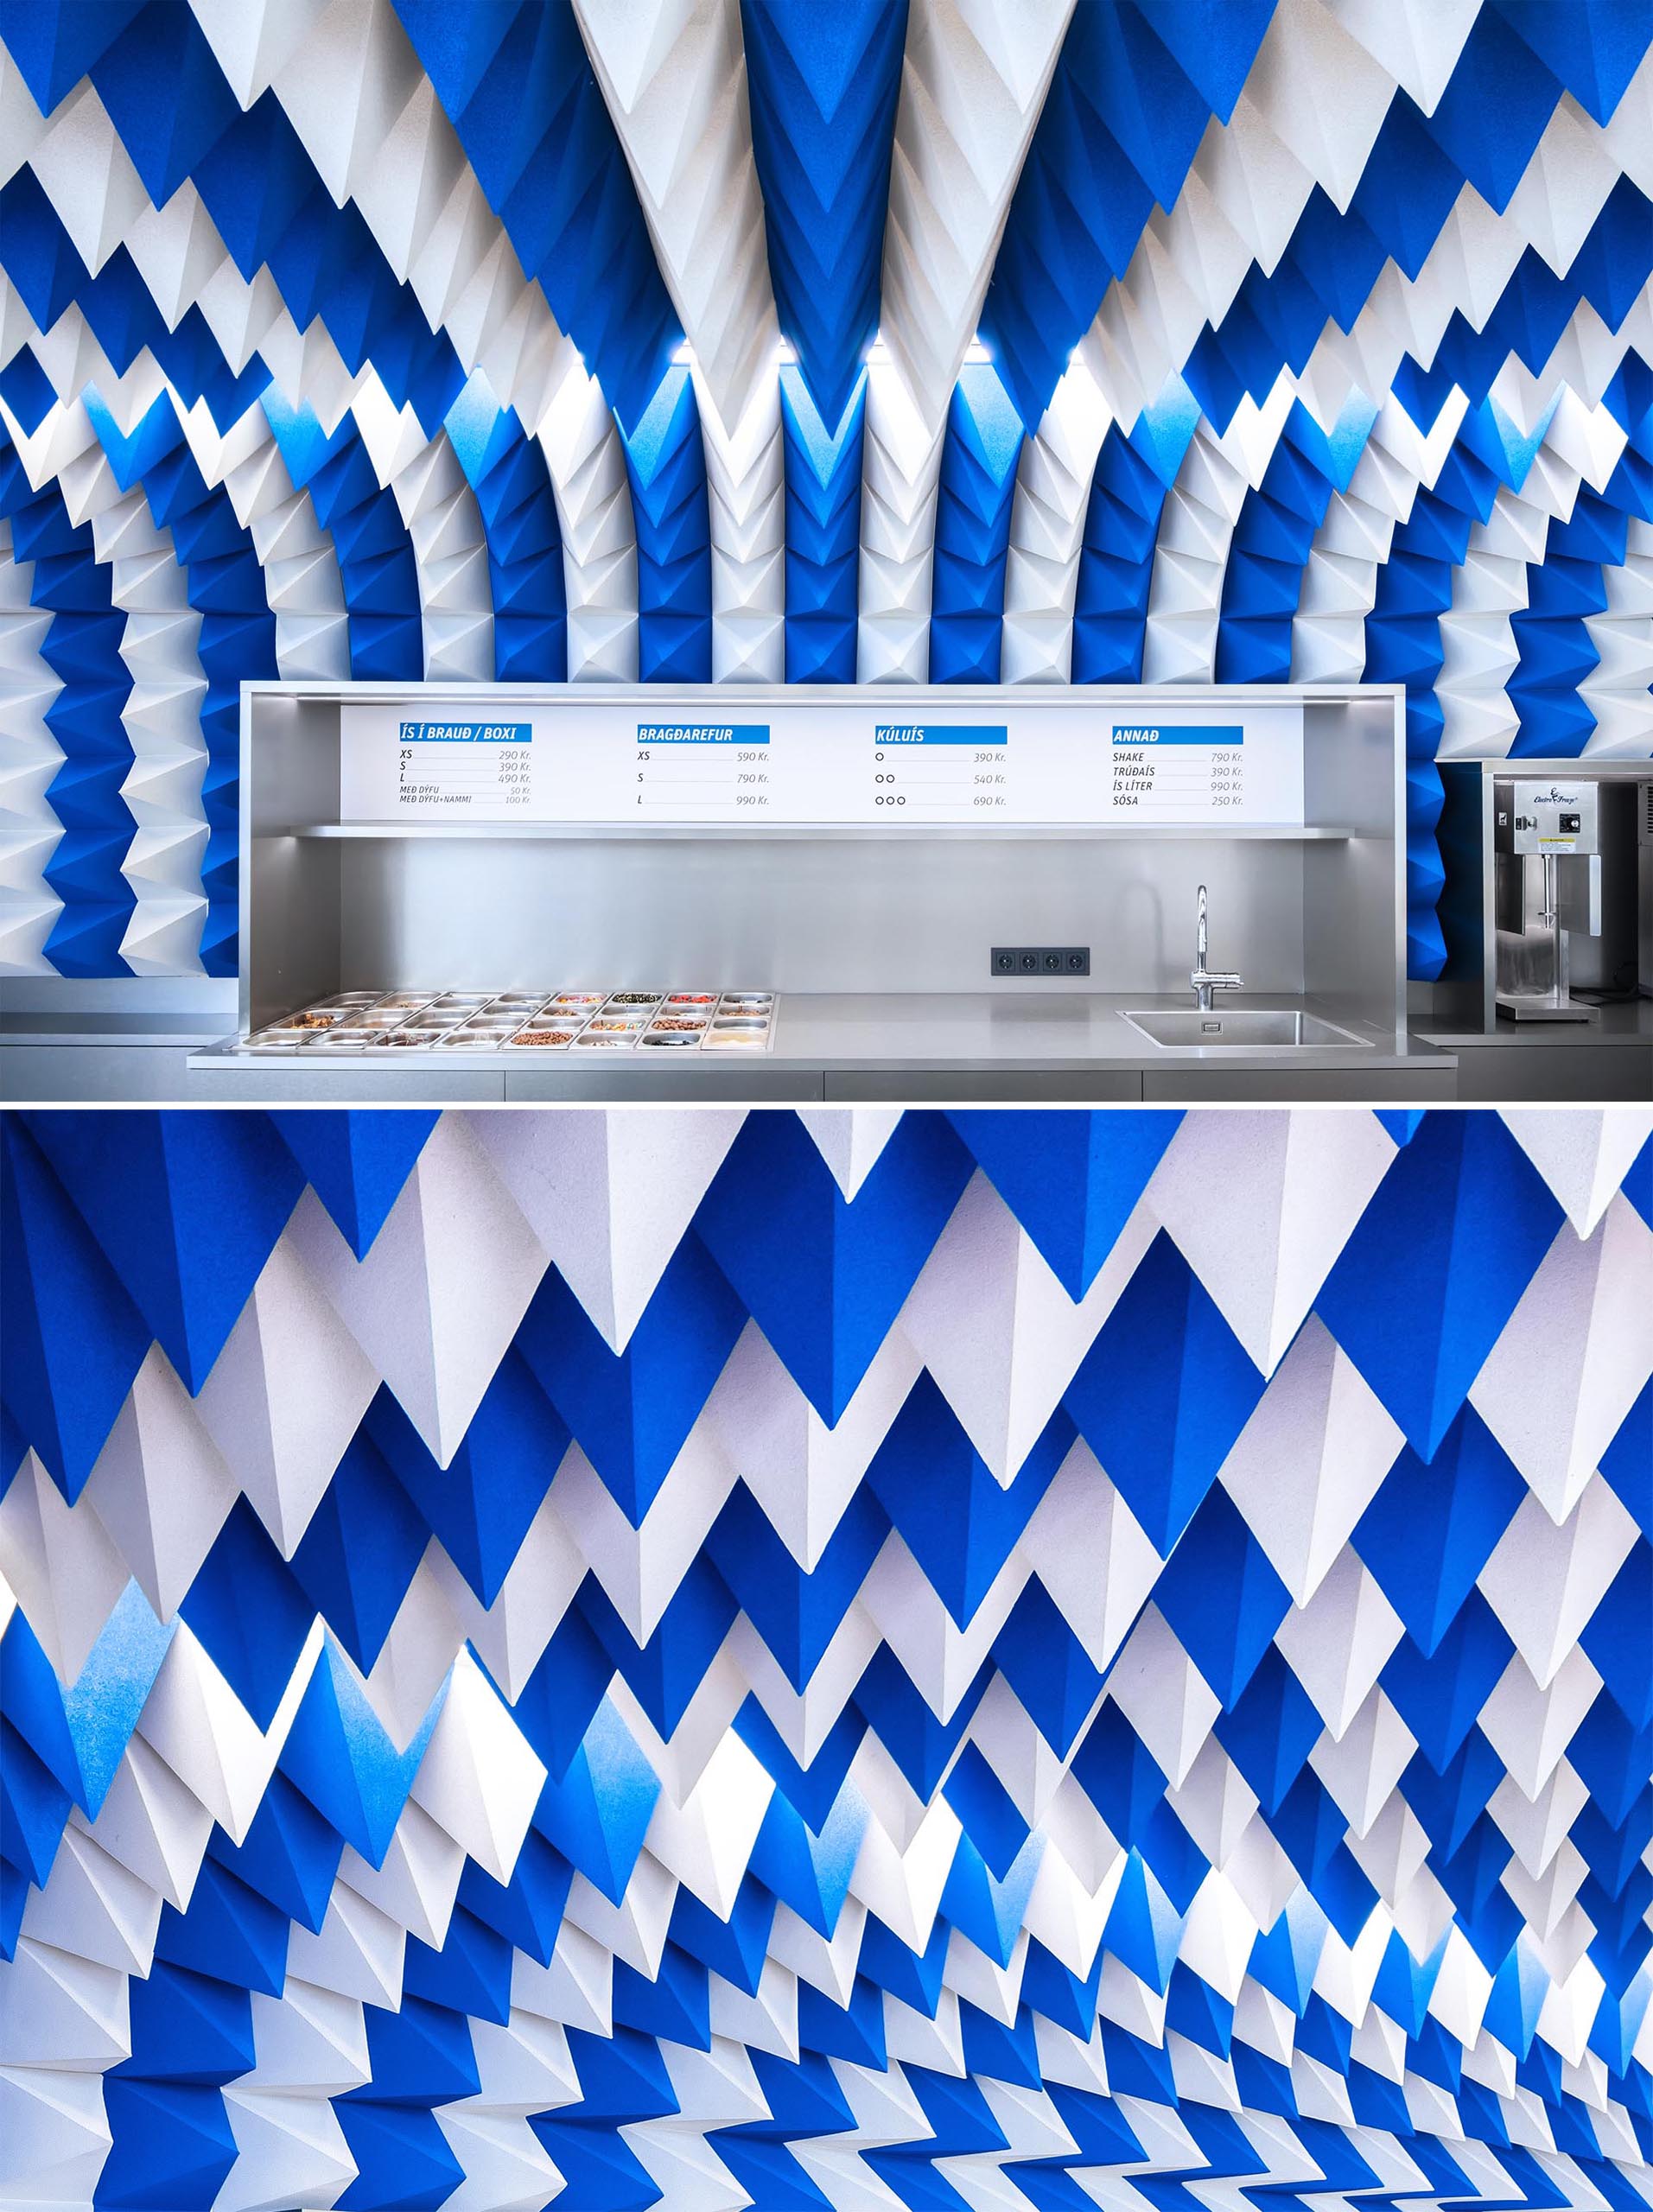 Современный магазин мороженого со скульптурной потолочной инсталляцией из бело-голубых пирамид из пенопласта.